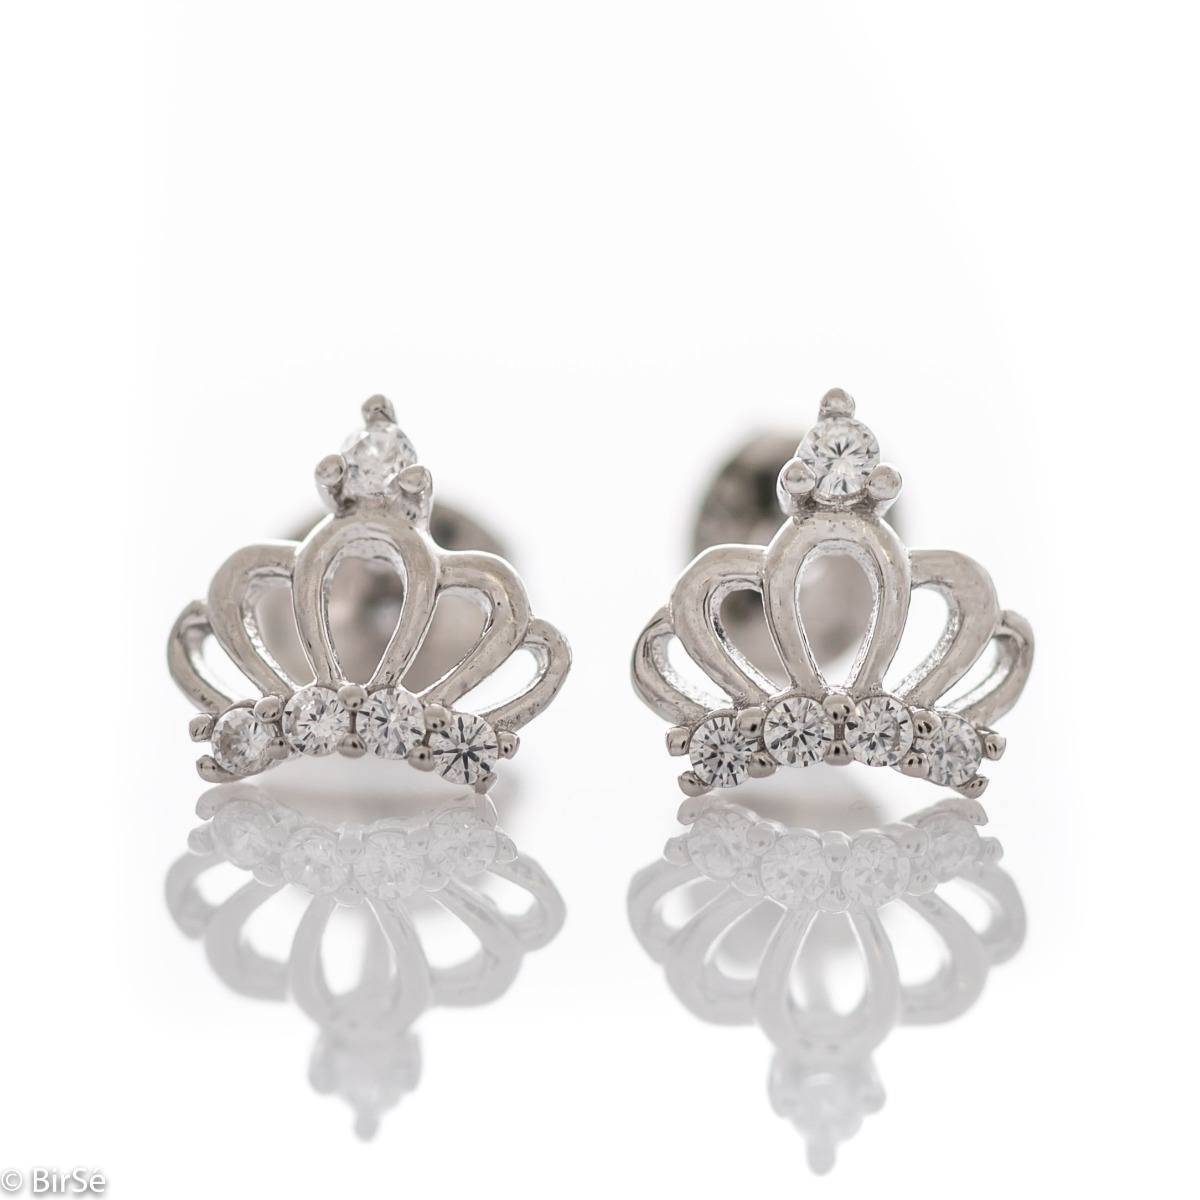 Silver earrings - Royal Crown